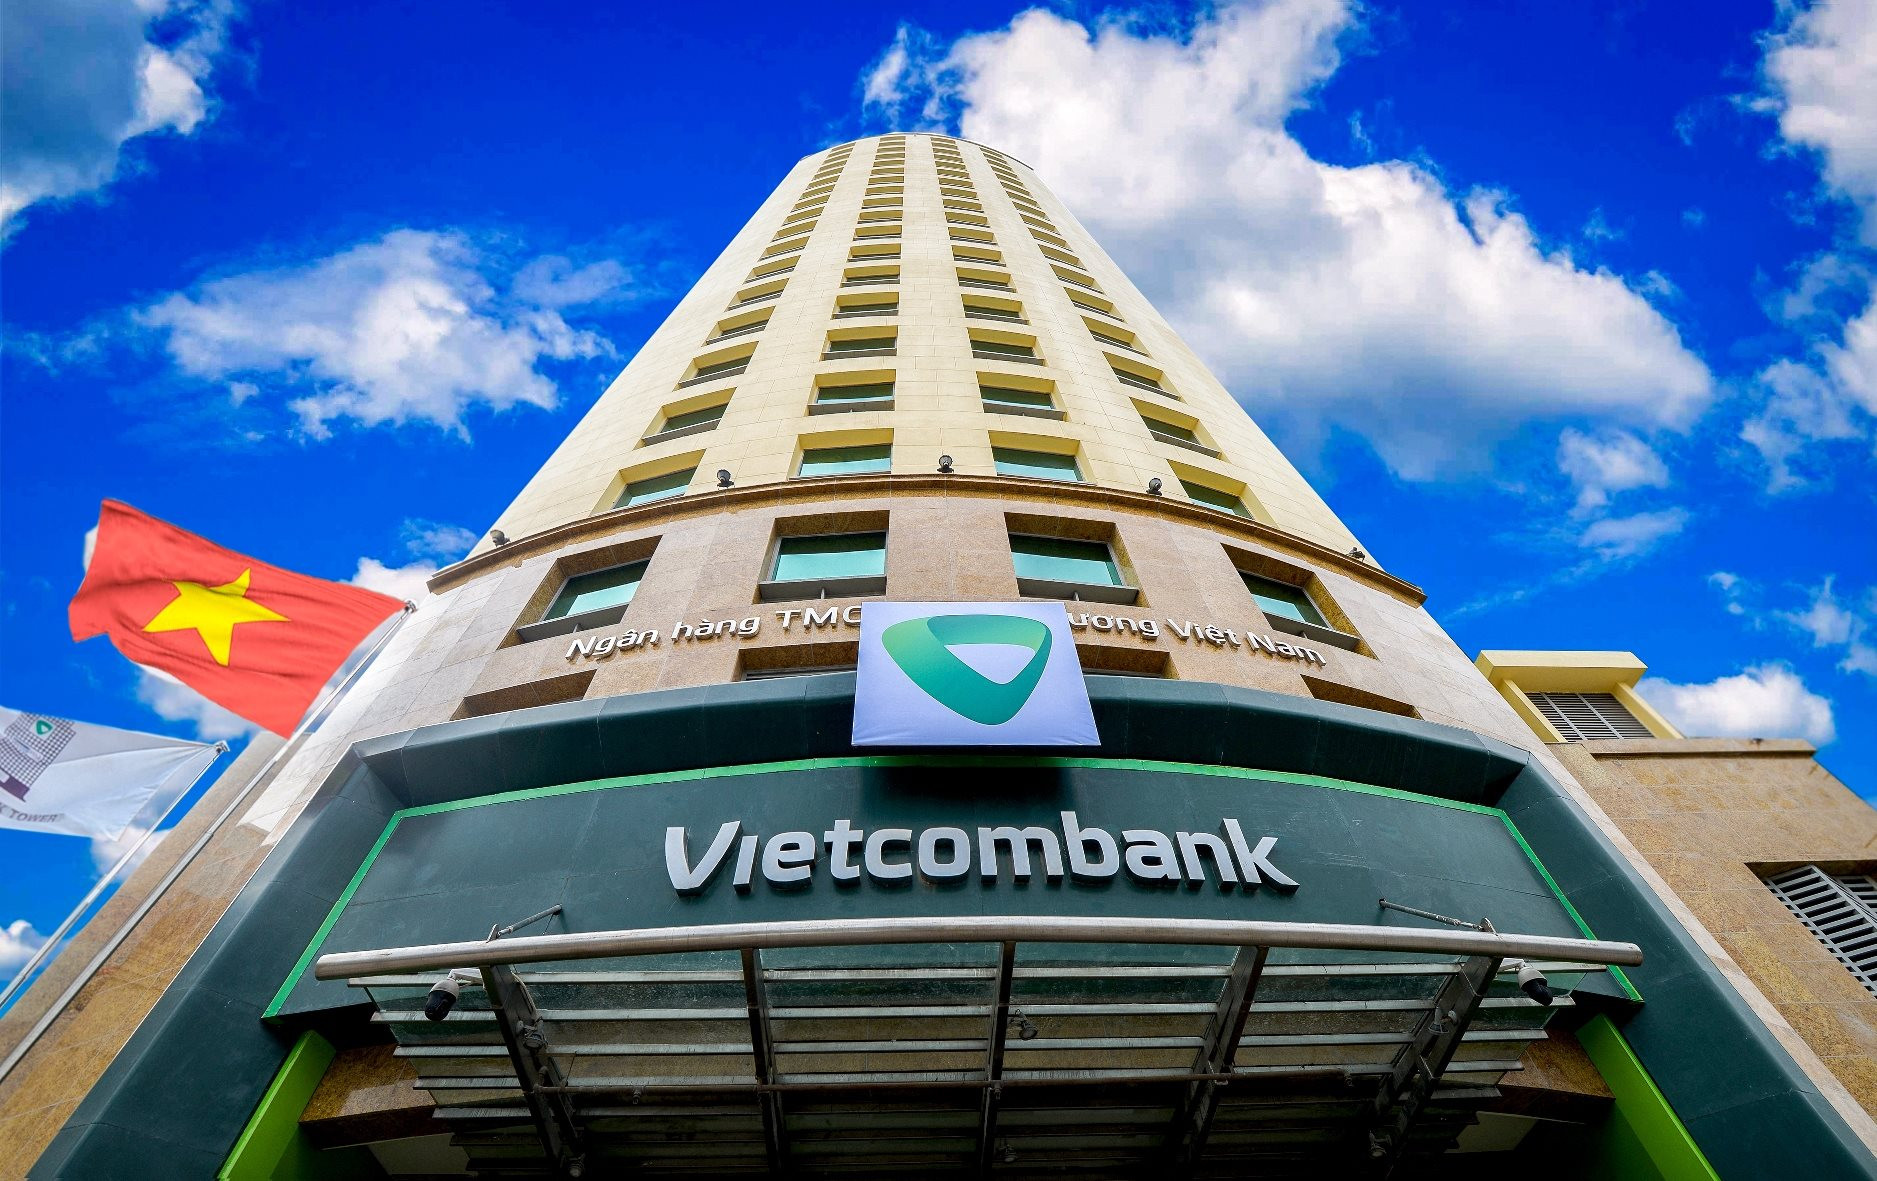 Vietcombank trở thành cổ phiếu đầu tiên vượt ngưỡng nửa triệu tỷ vốn hóa trong lịch sử chứng khoán Việt Nam - Ảnh 1.